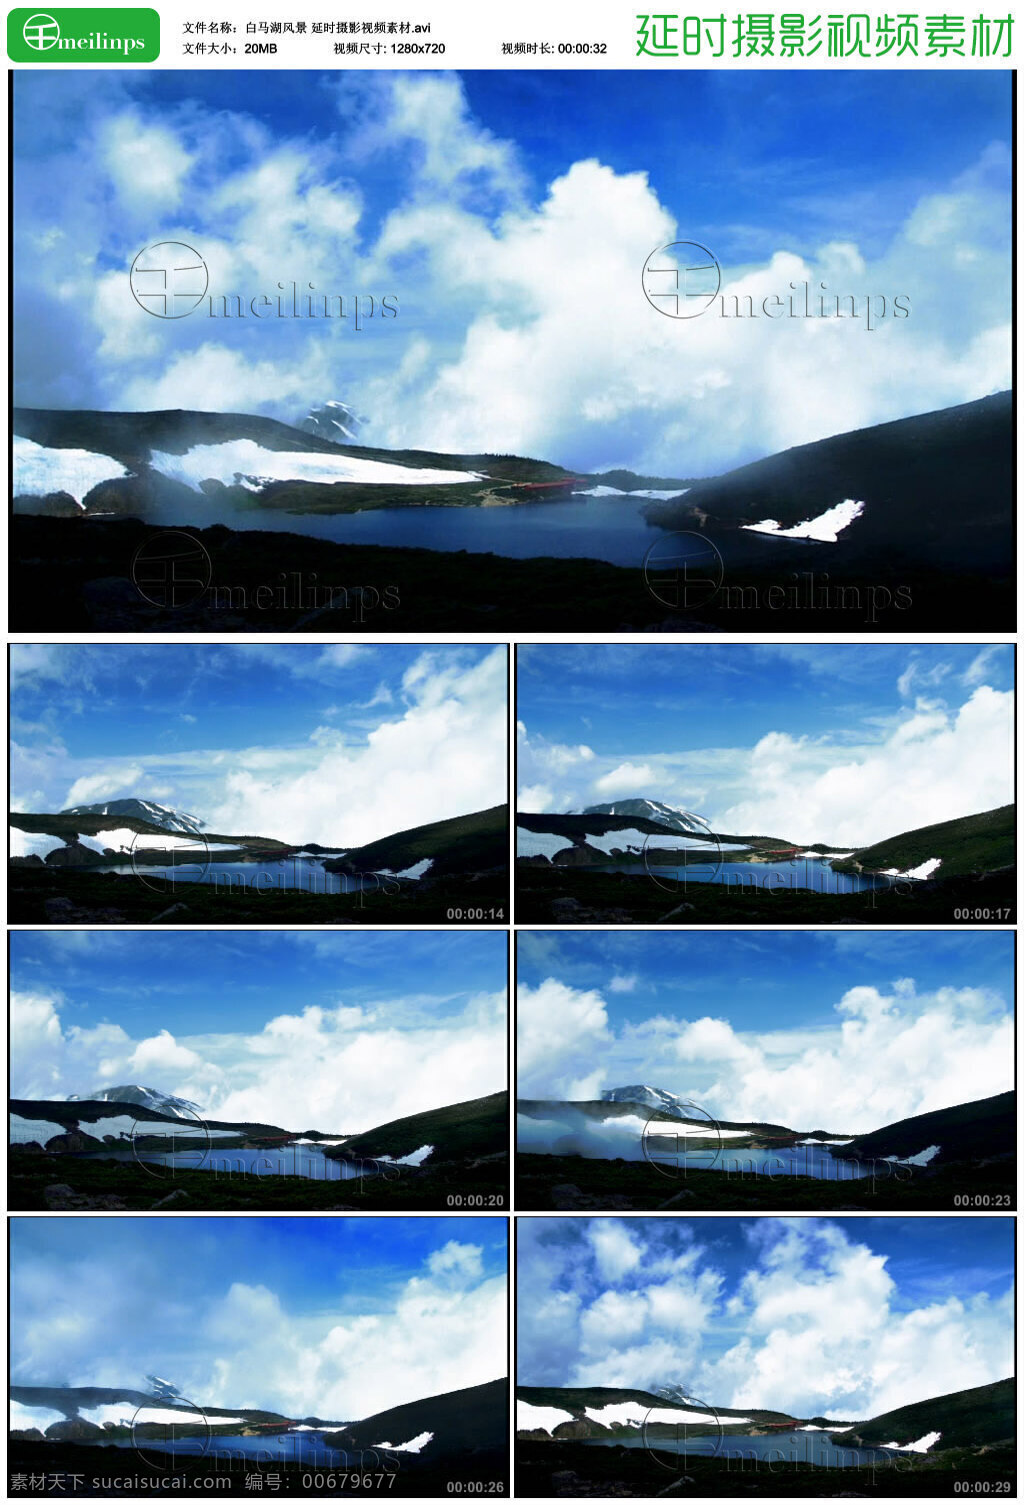 白马湖风景 延时 视频 白马湖 风景 天空 蓝天 白云 延时摄影 视频素材 avi 黑色